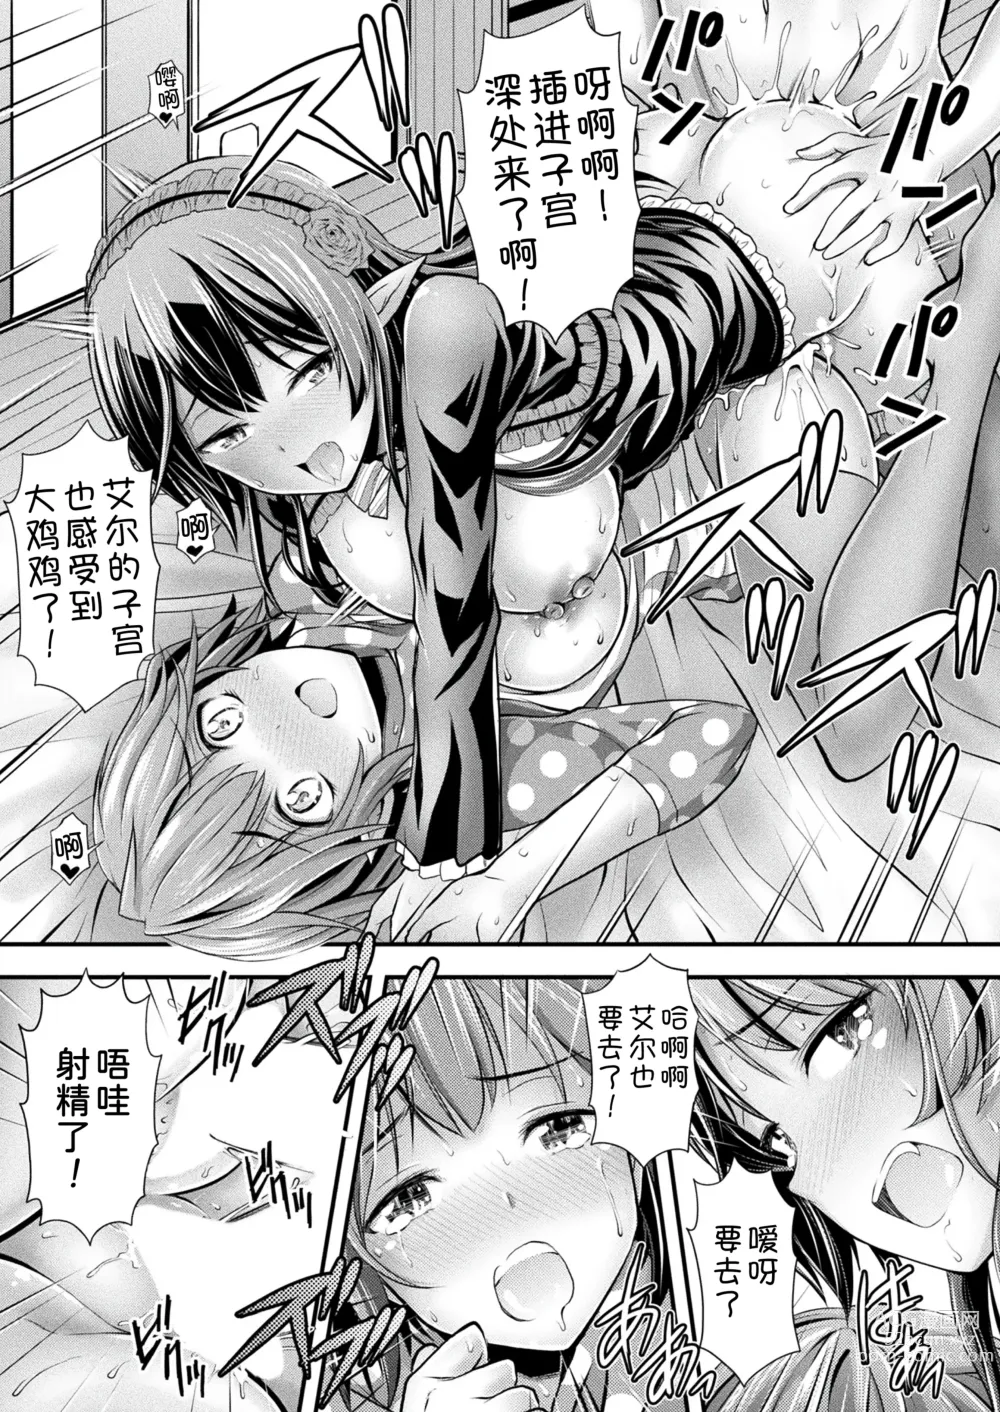 Page 23 of manga Herptile Girls Kouhen